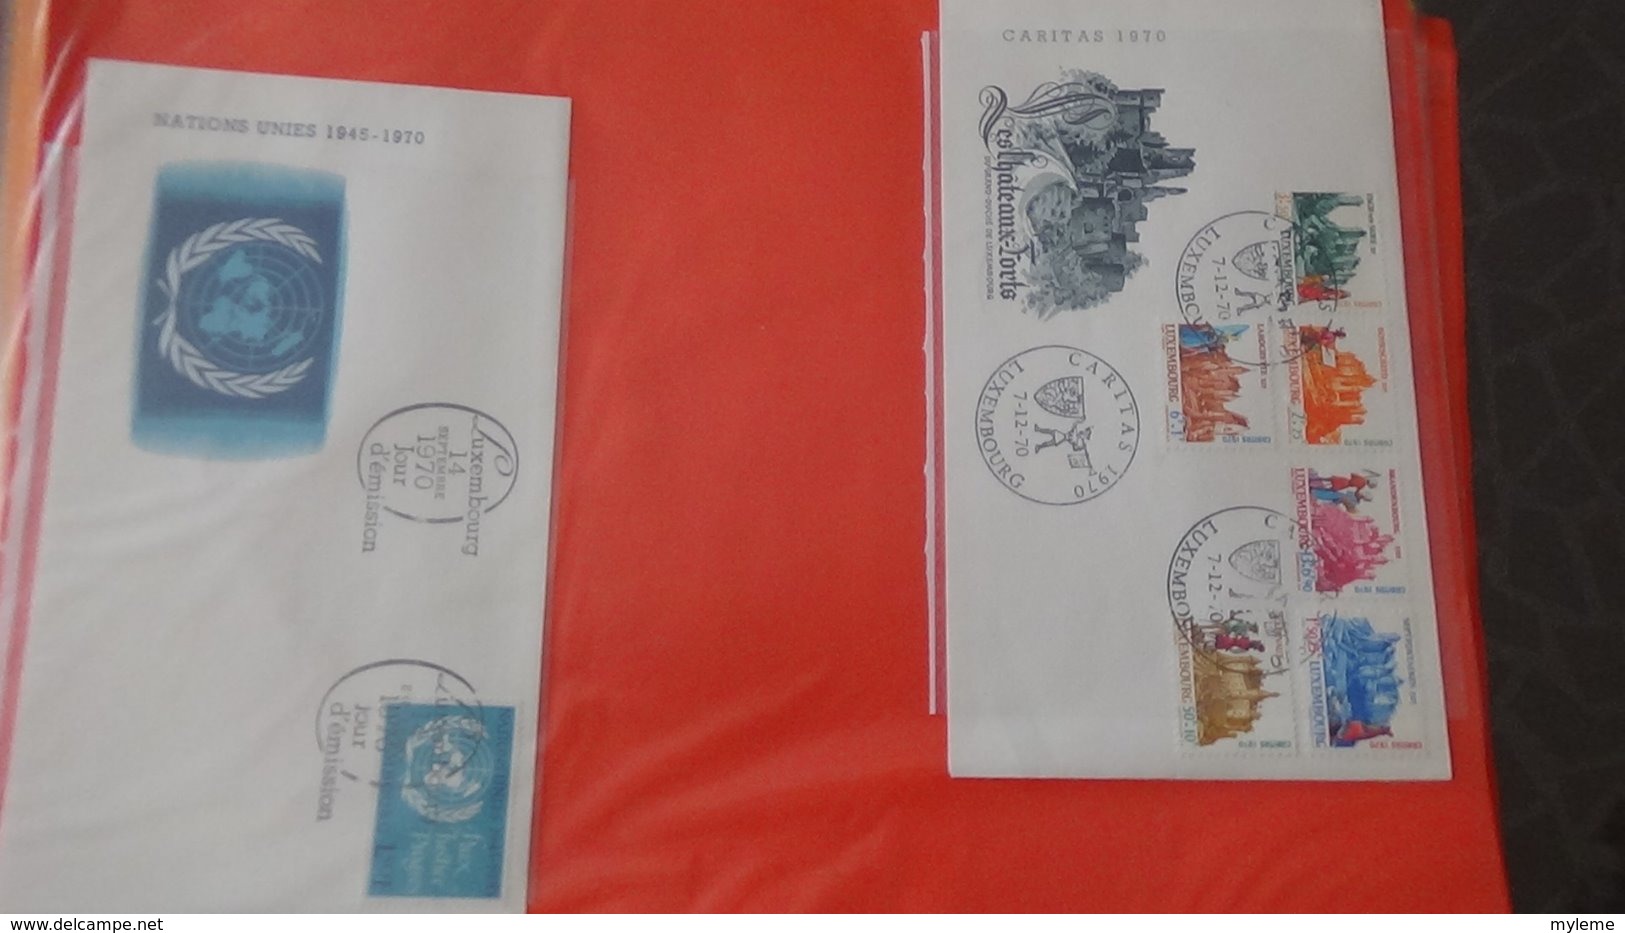 Dispersion d'une collection d'enveloppe 1er jour et autres dont 196 du LUXEMBOURG